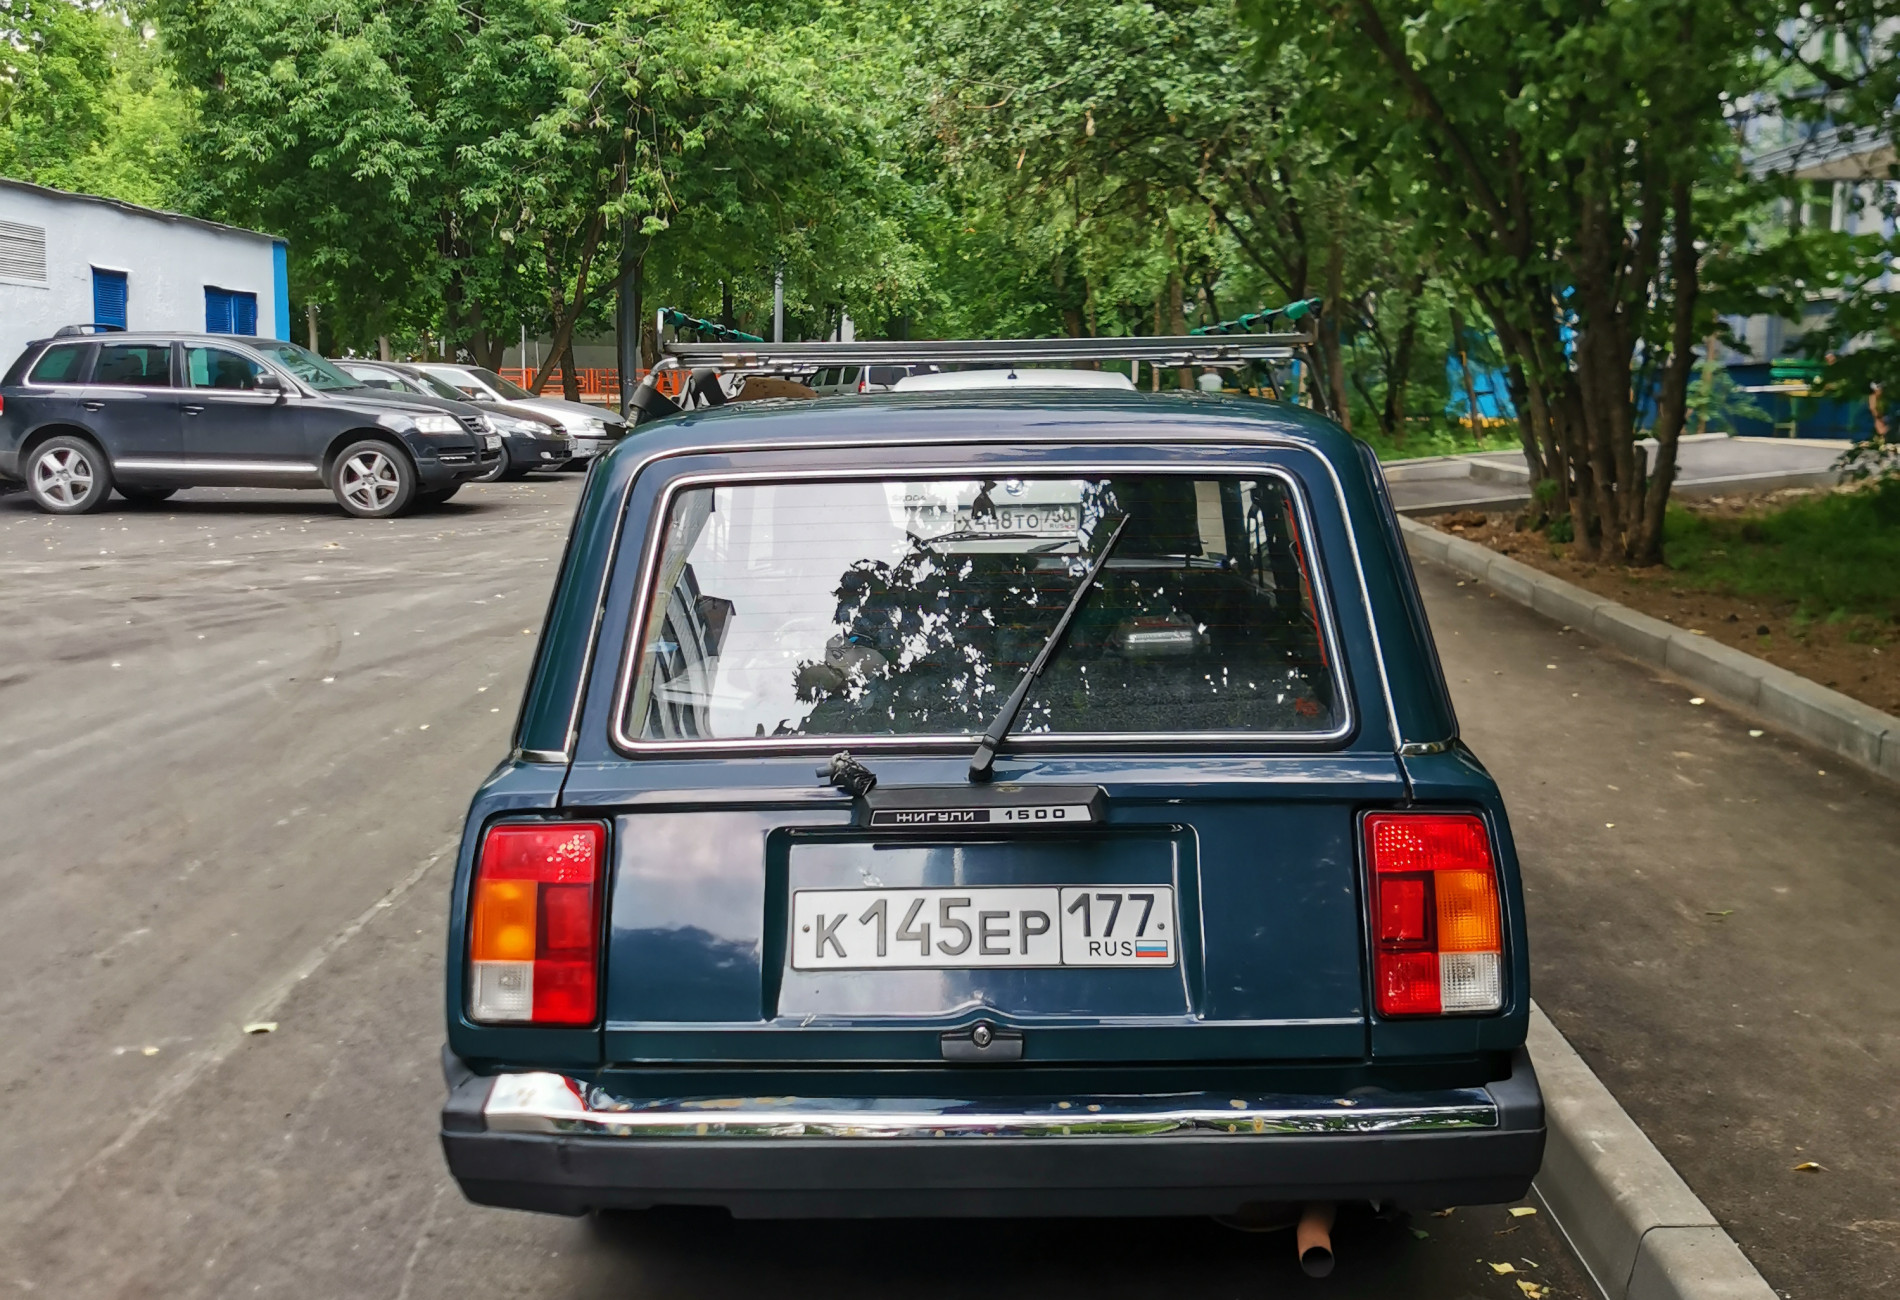 Аренда lada 2104 эконом класса 2006 года в городе Москва от 1080 руб./сутки, передний привод, двигатель: бензин, объем 1451 литр, ОСАГО (Впишу в полис), без водителя, недорого, вид 21 - RentRide